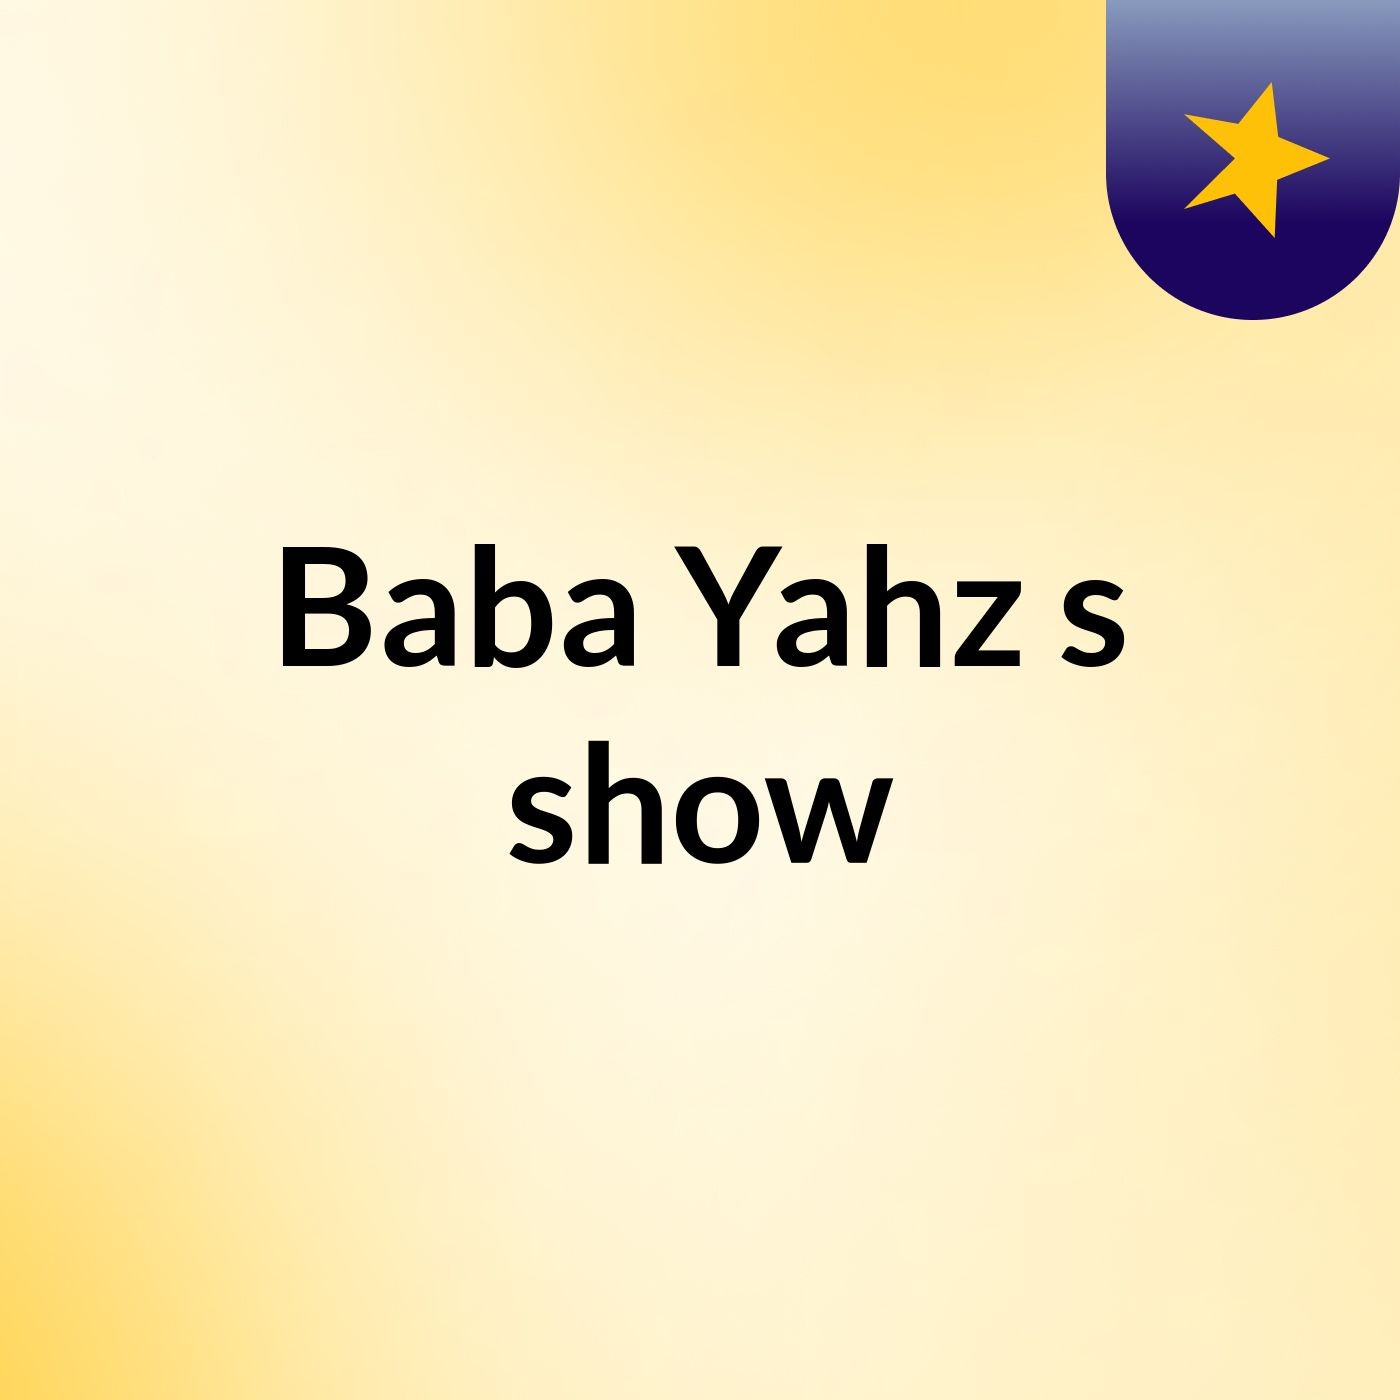 Baba Yahz's show